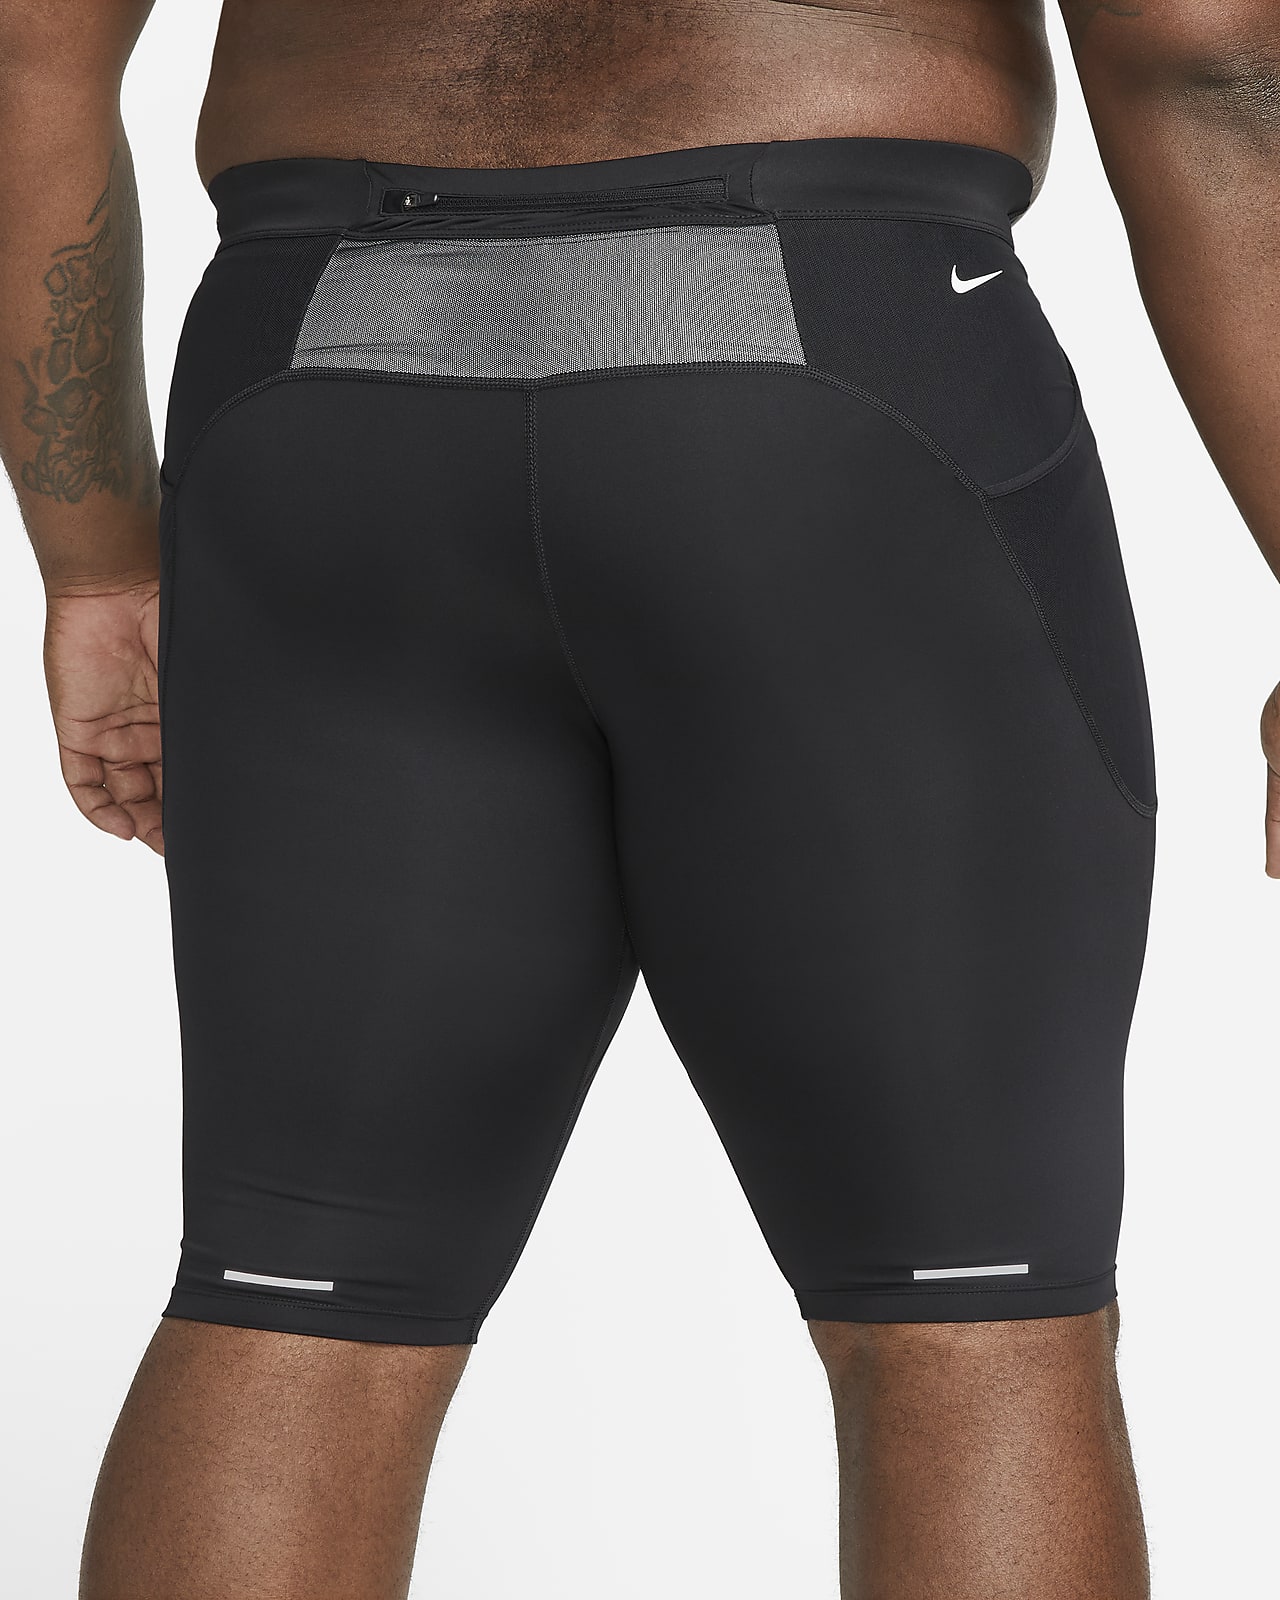 Nike Men's Dri-Fit 3/4 Trail Reflective Running Tights Short DD4758 010  Size XXL